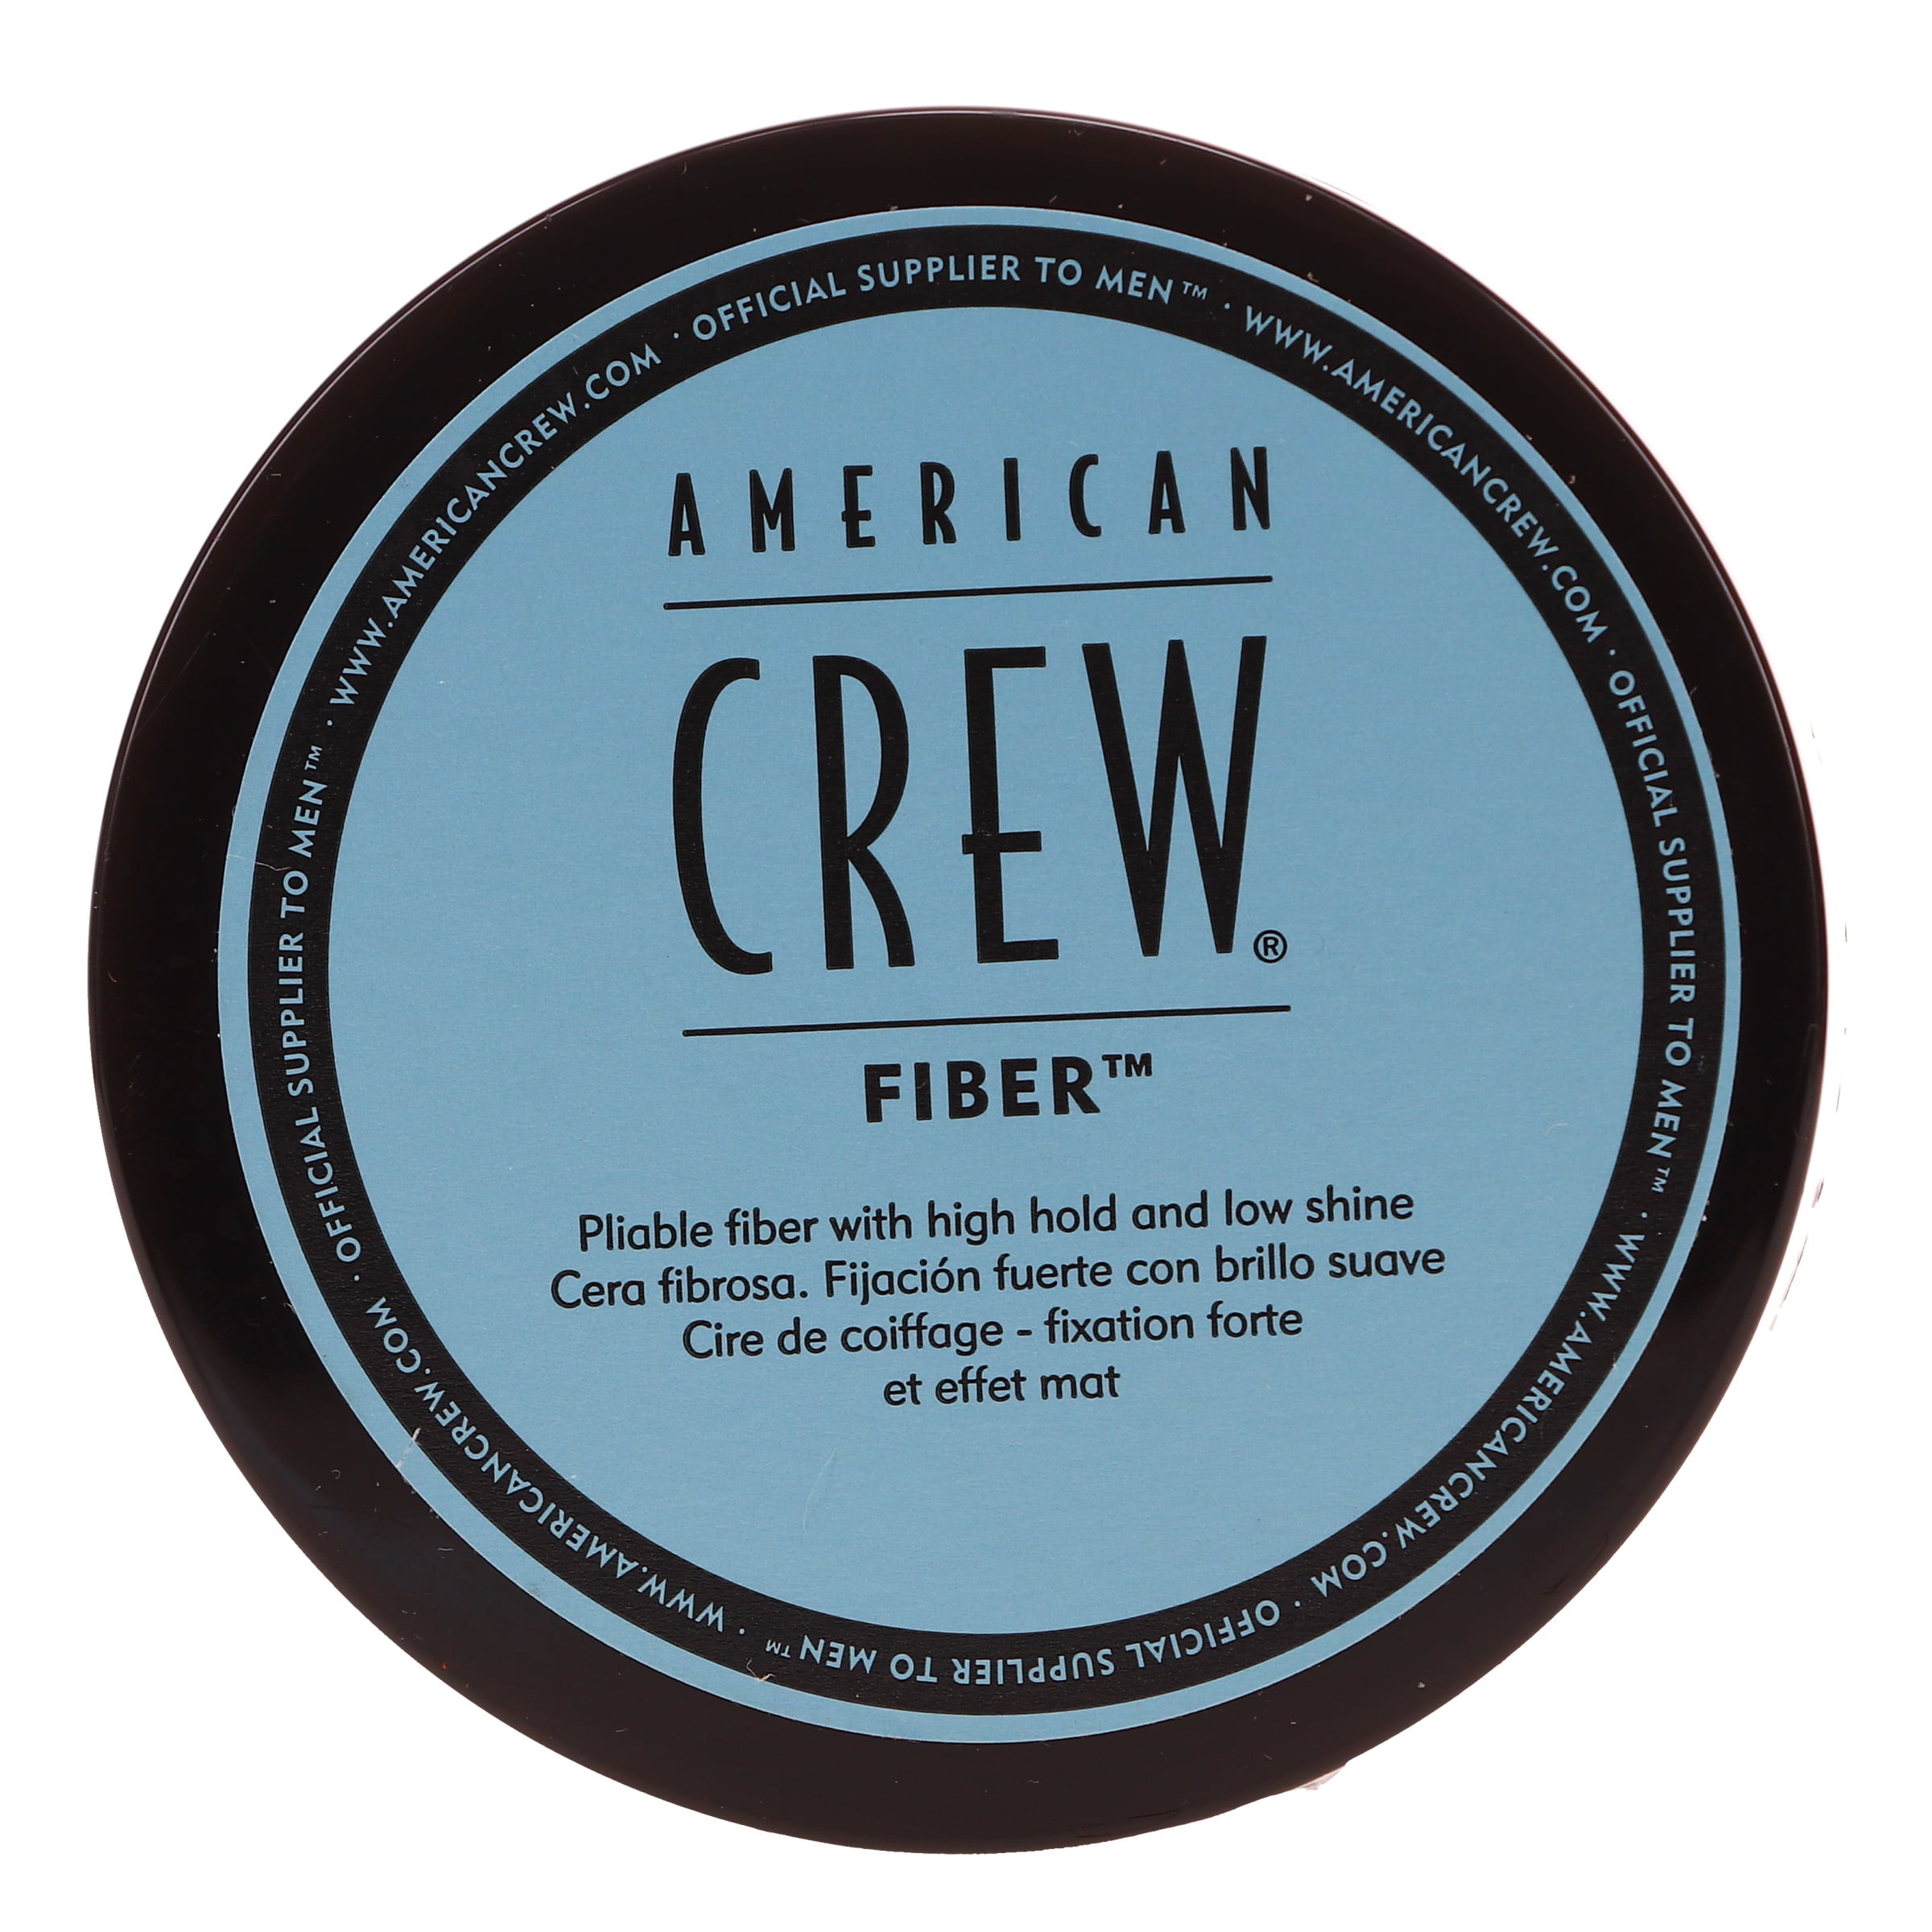 American Crew Fiber 3 oz - Walmart.com